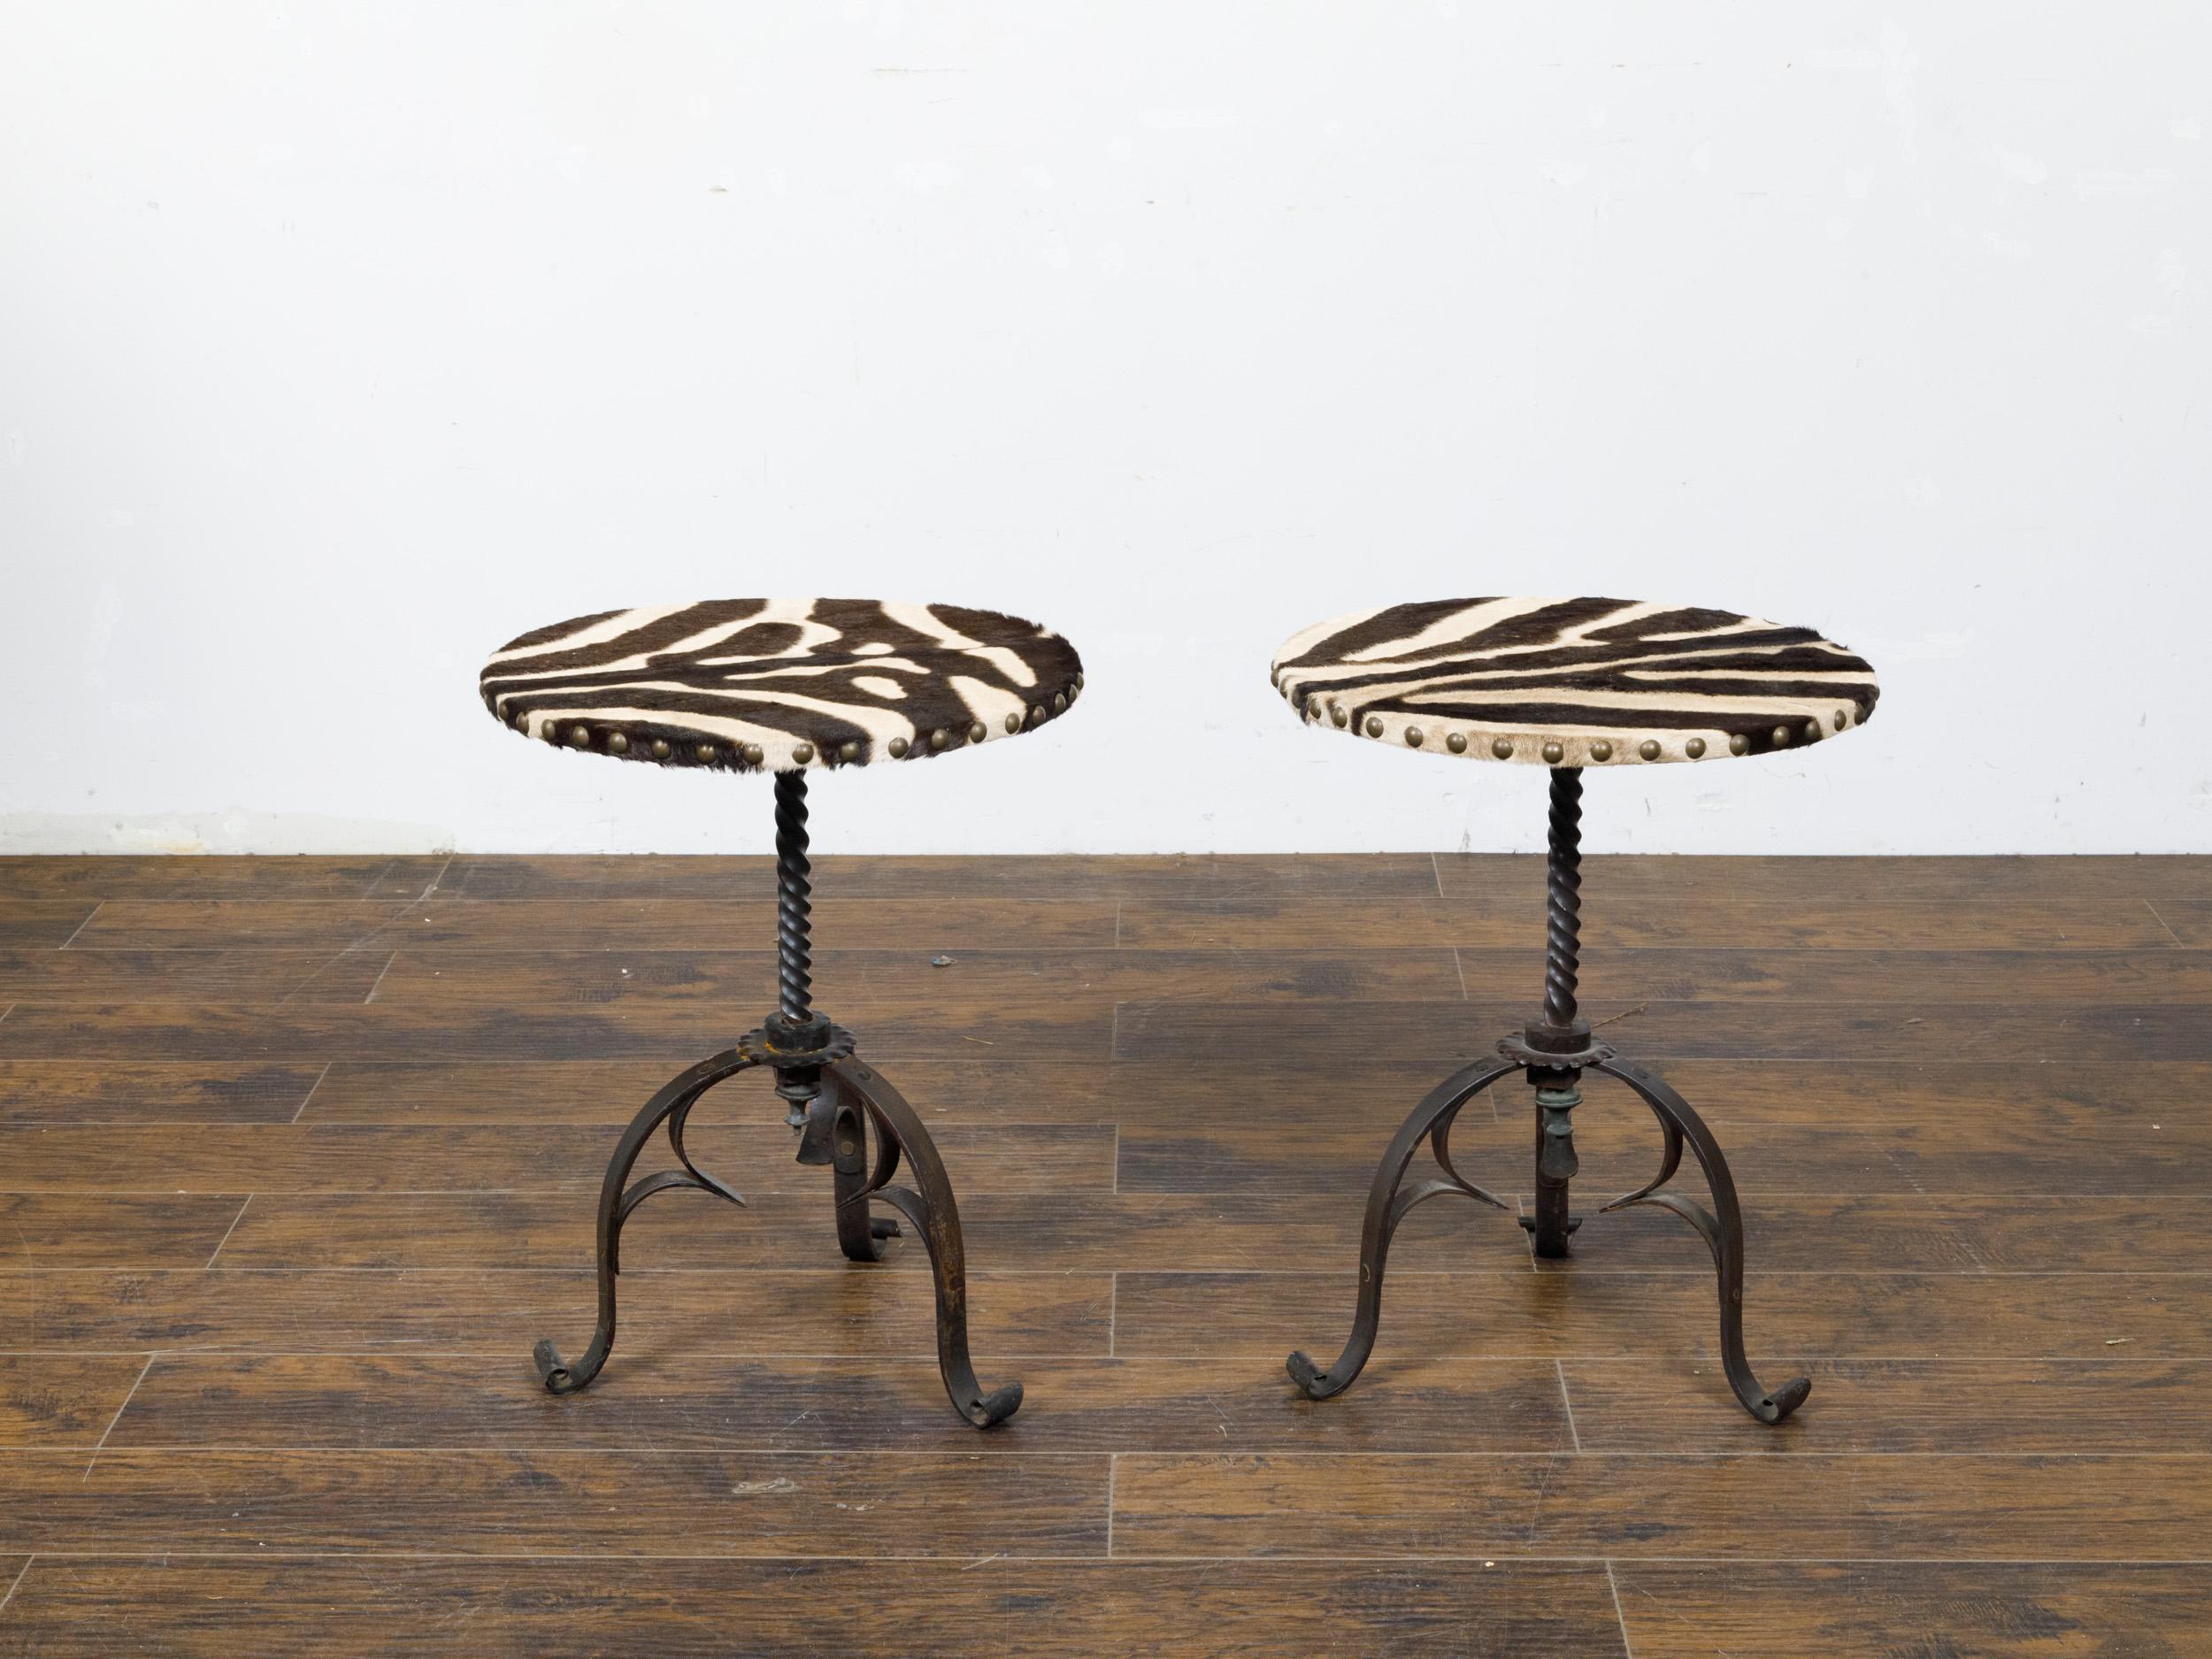 Ein Paar französischer Guéridon-Beistelltische aus Eisen aus der Mitte des 20. Jahrhunderts mit runden Zebrafell-Platten, gedrehten Basen auf drei geschwungenen Beinen. Dieses bezaubernde Paar französischer Guéridon-Beistelltische aus der Mitte des